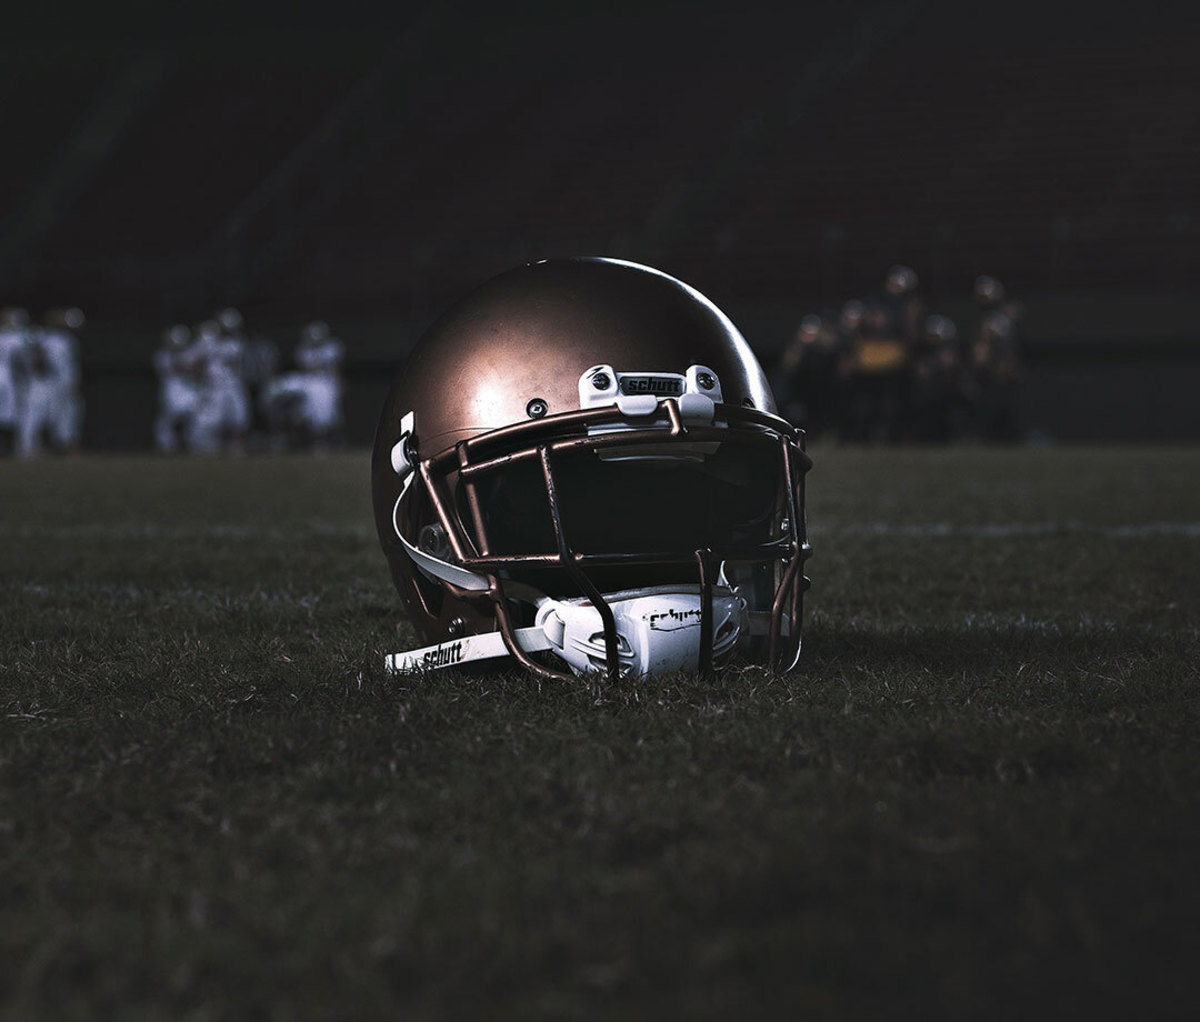 Close-up of helmet in dark stadium